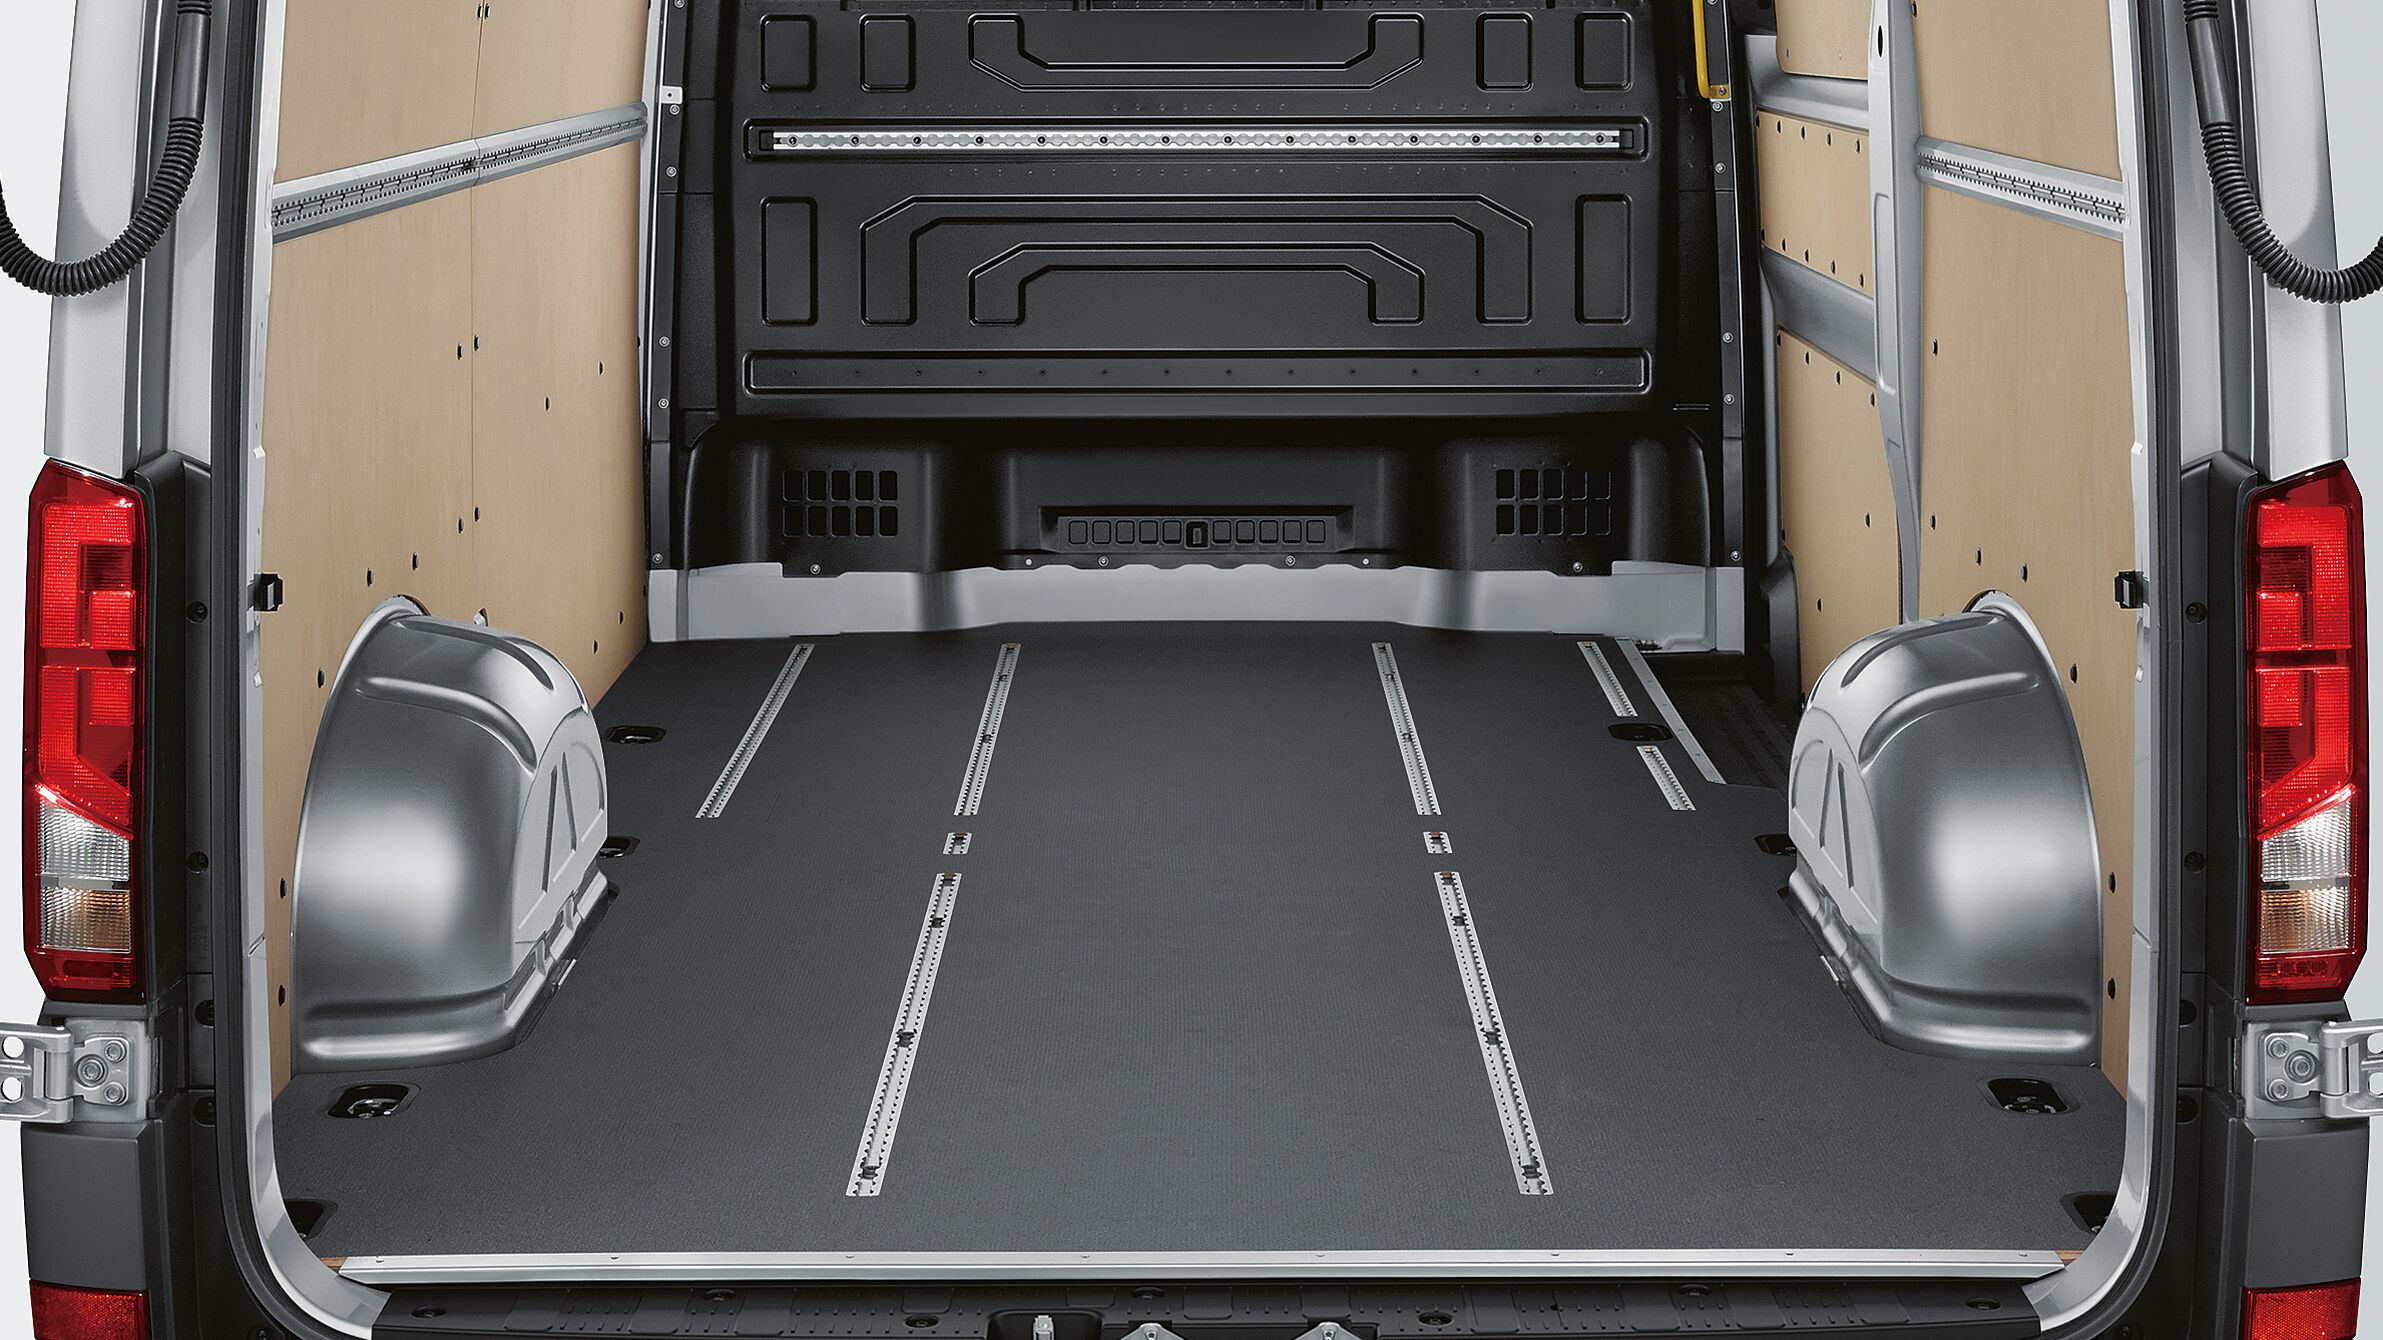 Uma vista para o compartimento de carga do e-Crafter da Volkswagen Veículos Comerciais. O piso universal pode ser visto aqui.